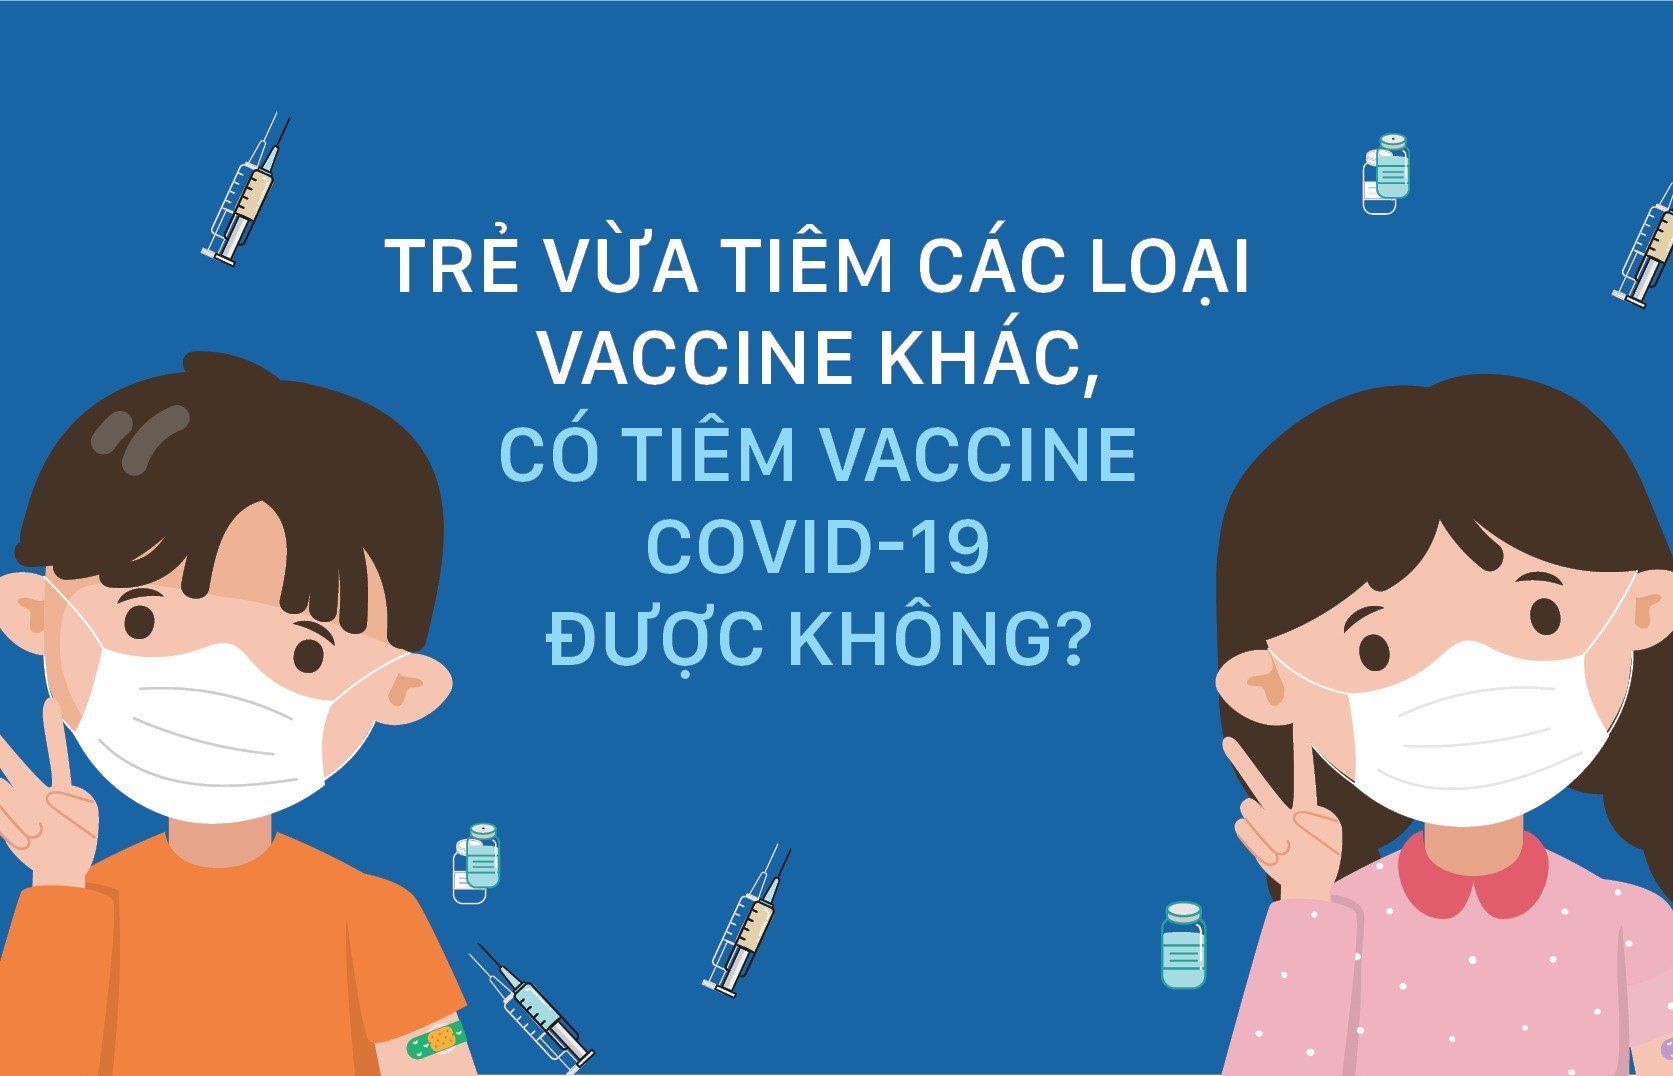 Trẻ vừa tiêm các loại vaccine khác có tiêm vaccine Covid-19 được không?